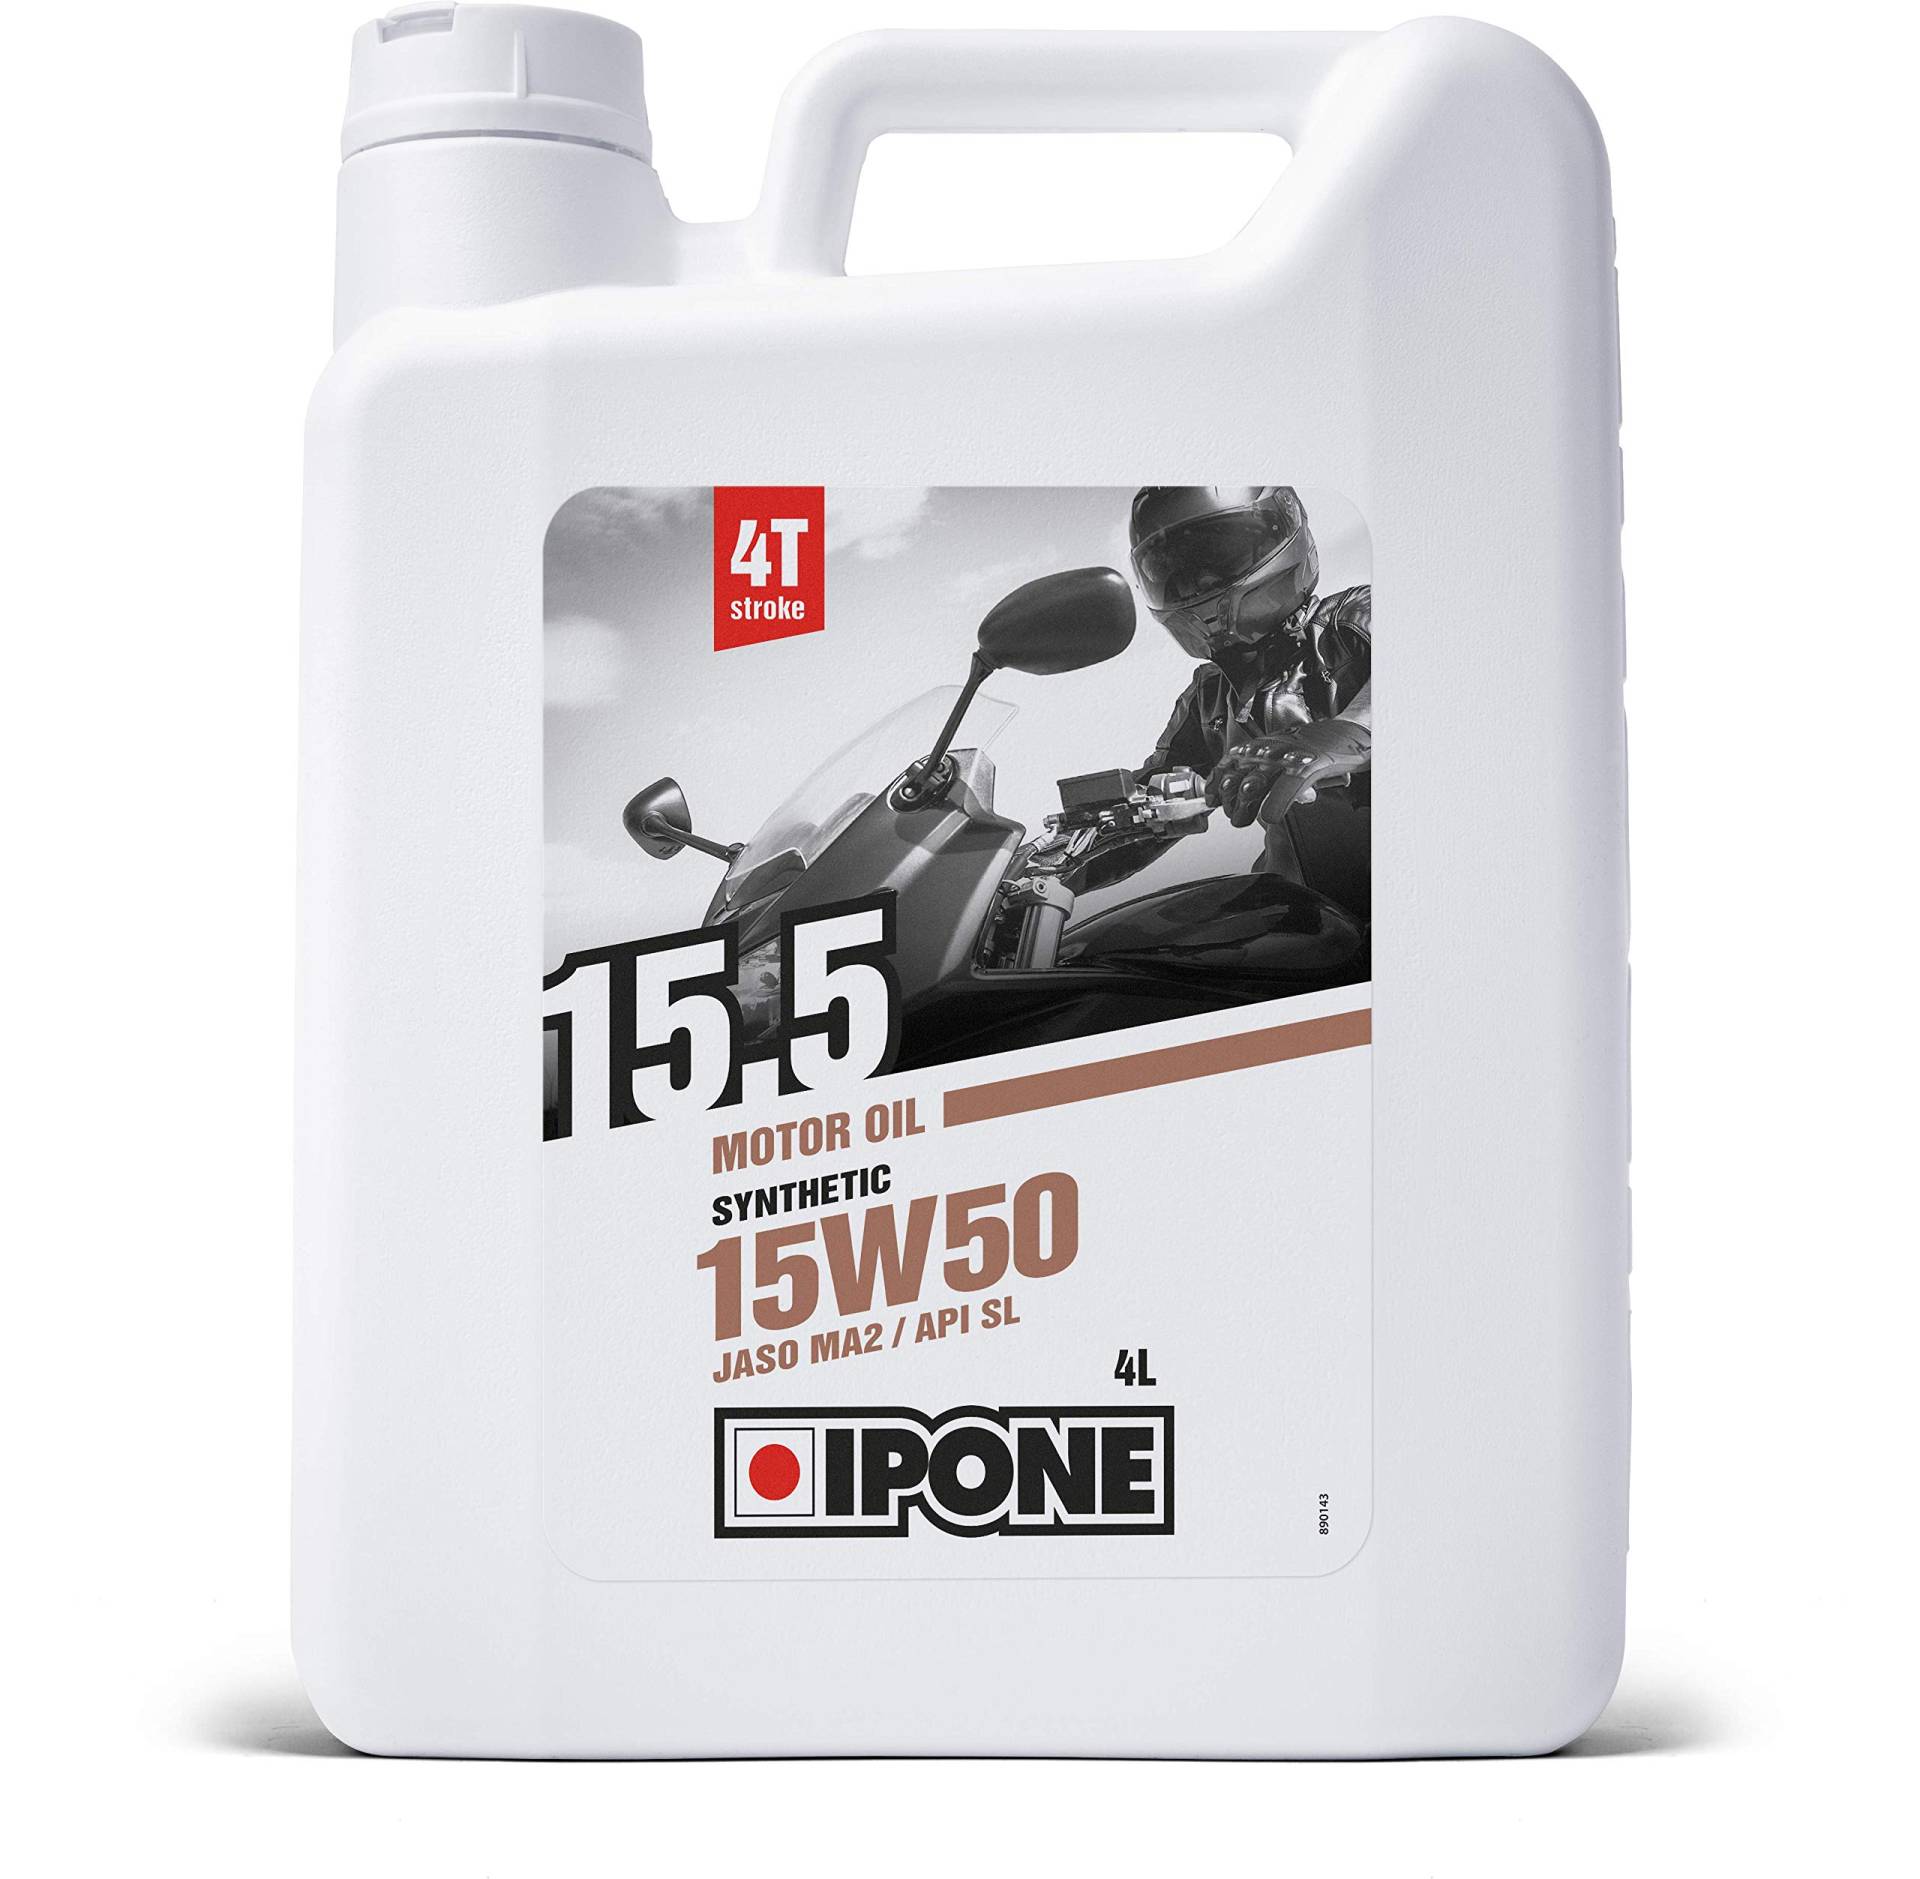 Ipone - 4-Takt-Motorradöl 15W50 15.5-4 Liter - Halbsynthetisch - Schutz des Motors - Optimale Schmierung von Ipone